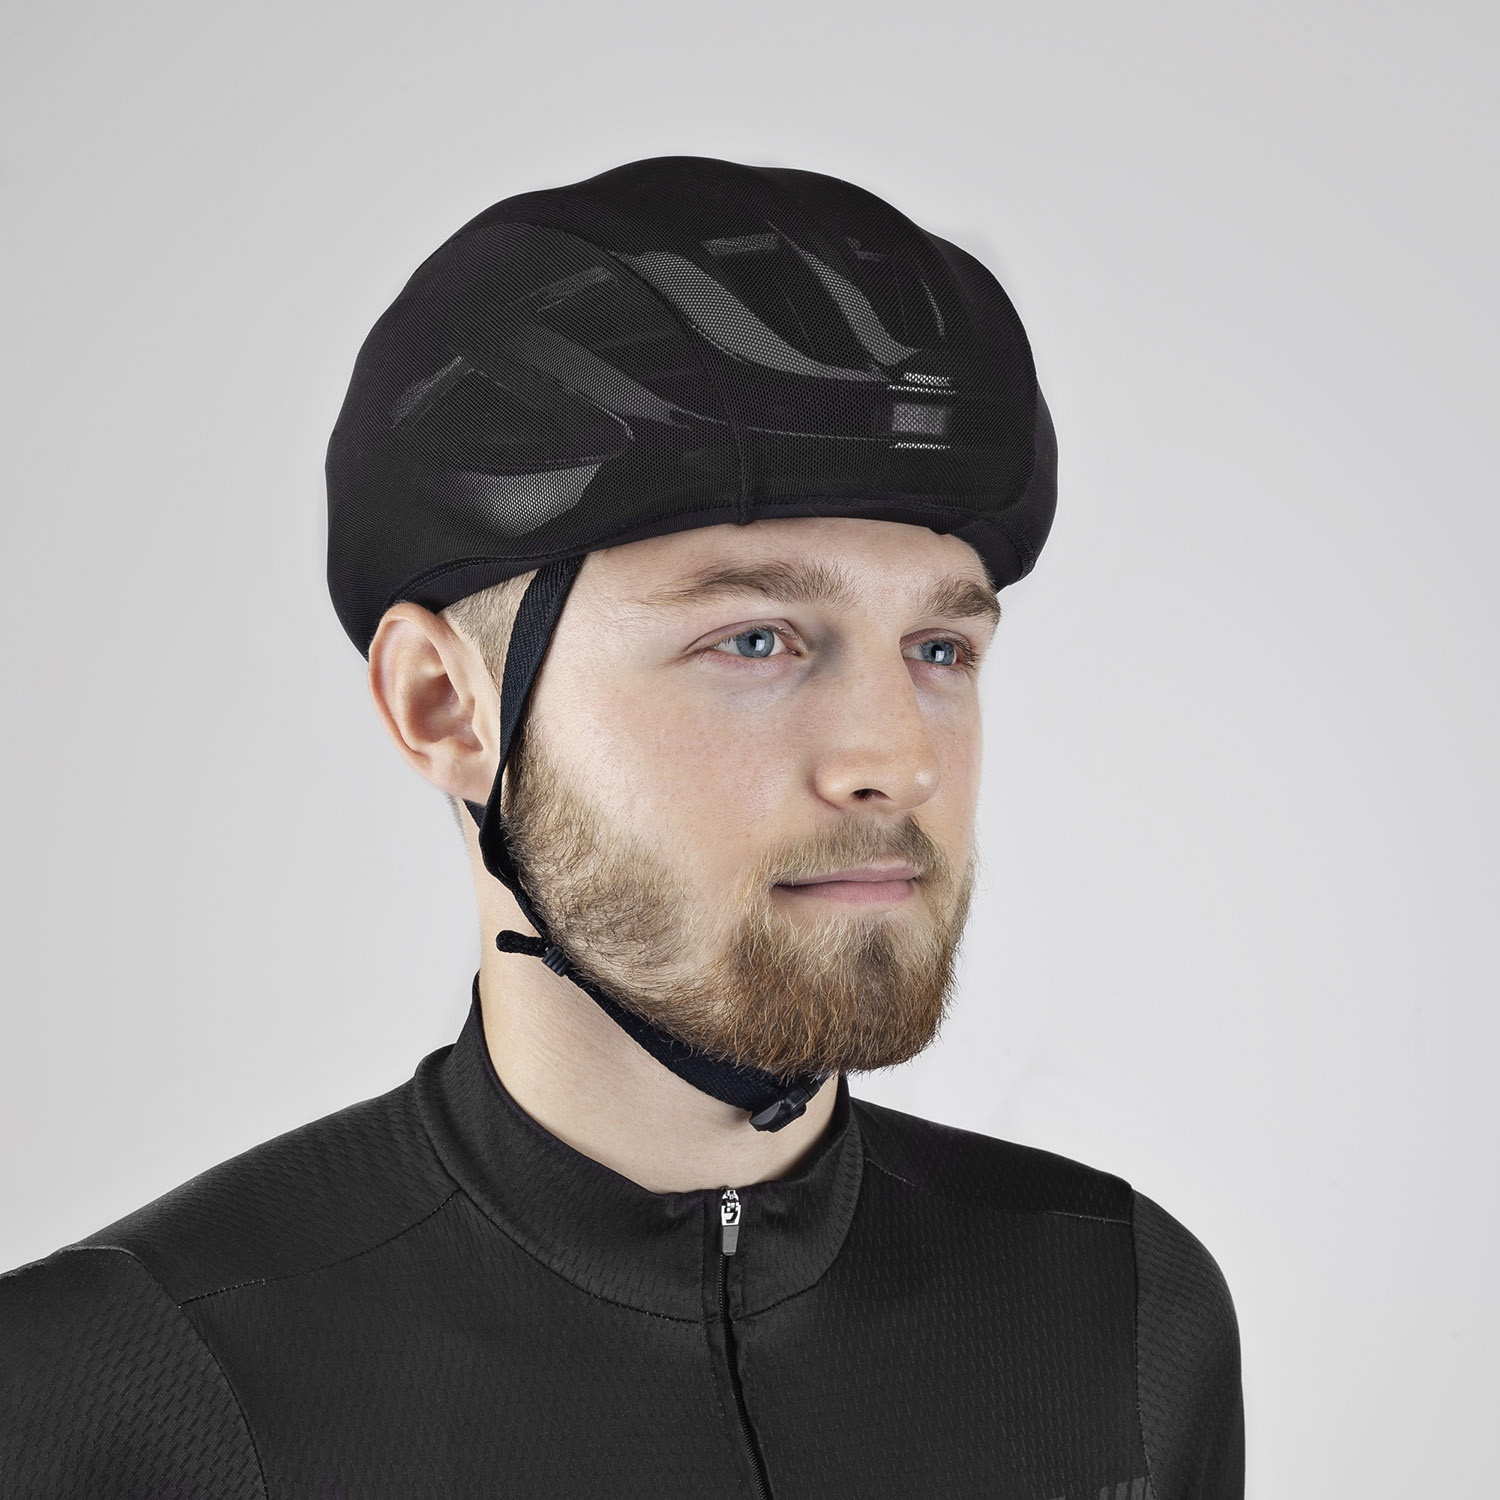 Beklædning - Hjelmhuer - GripGrab BugShield Helmet Cover (Insektnet) - Sort